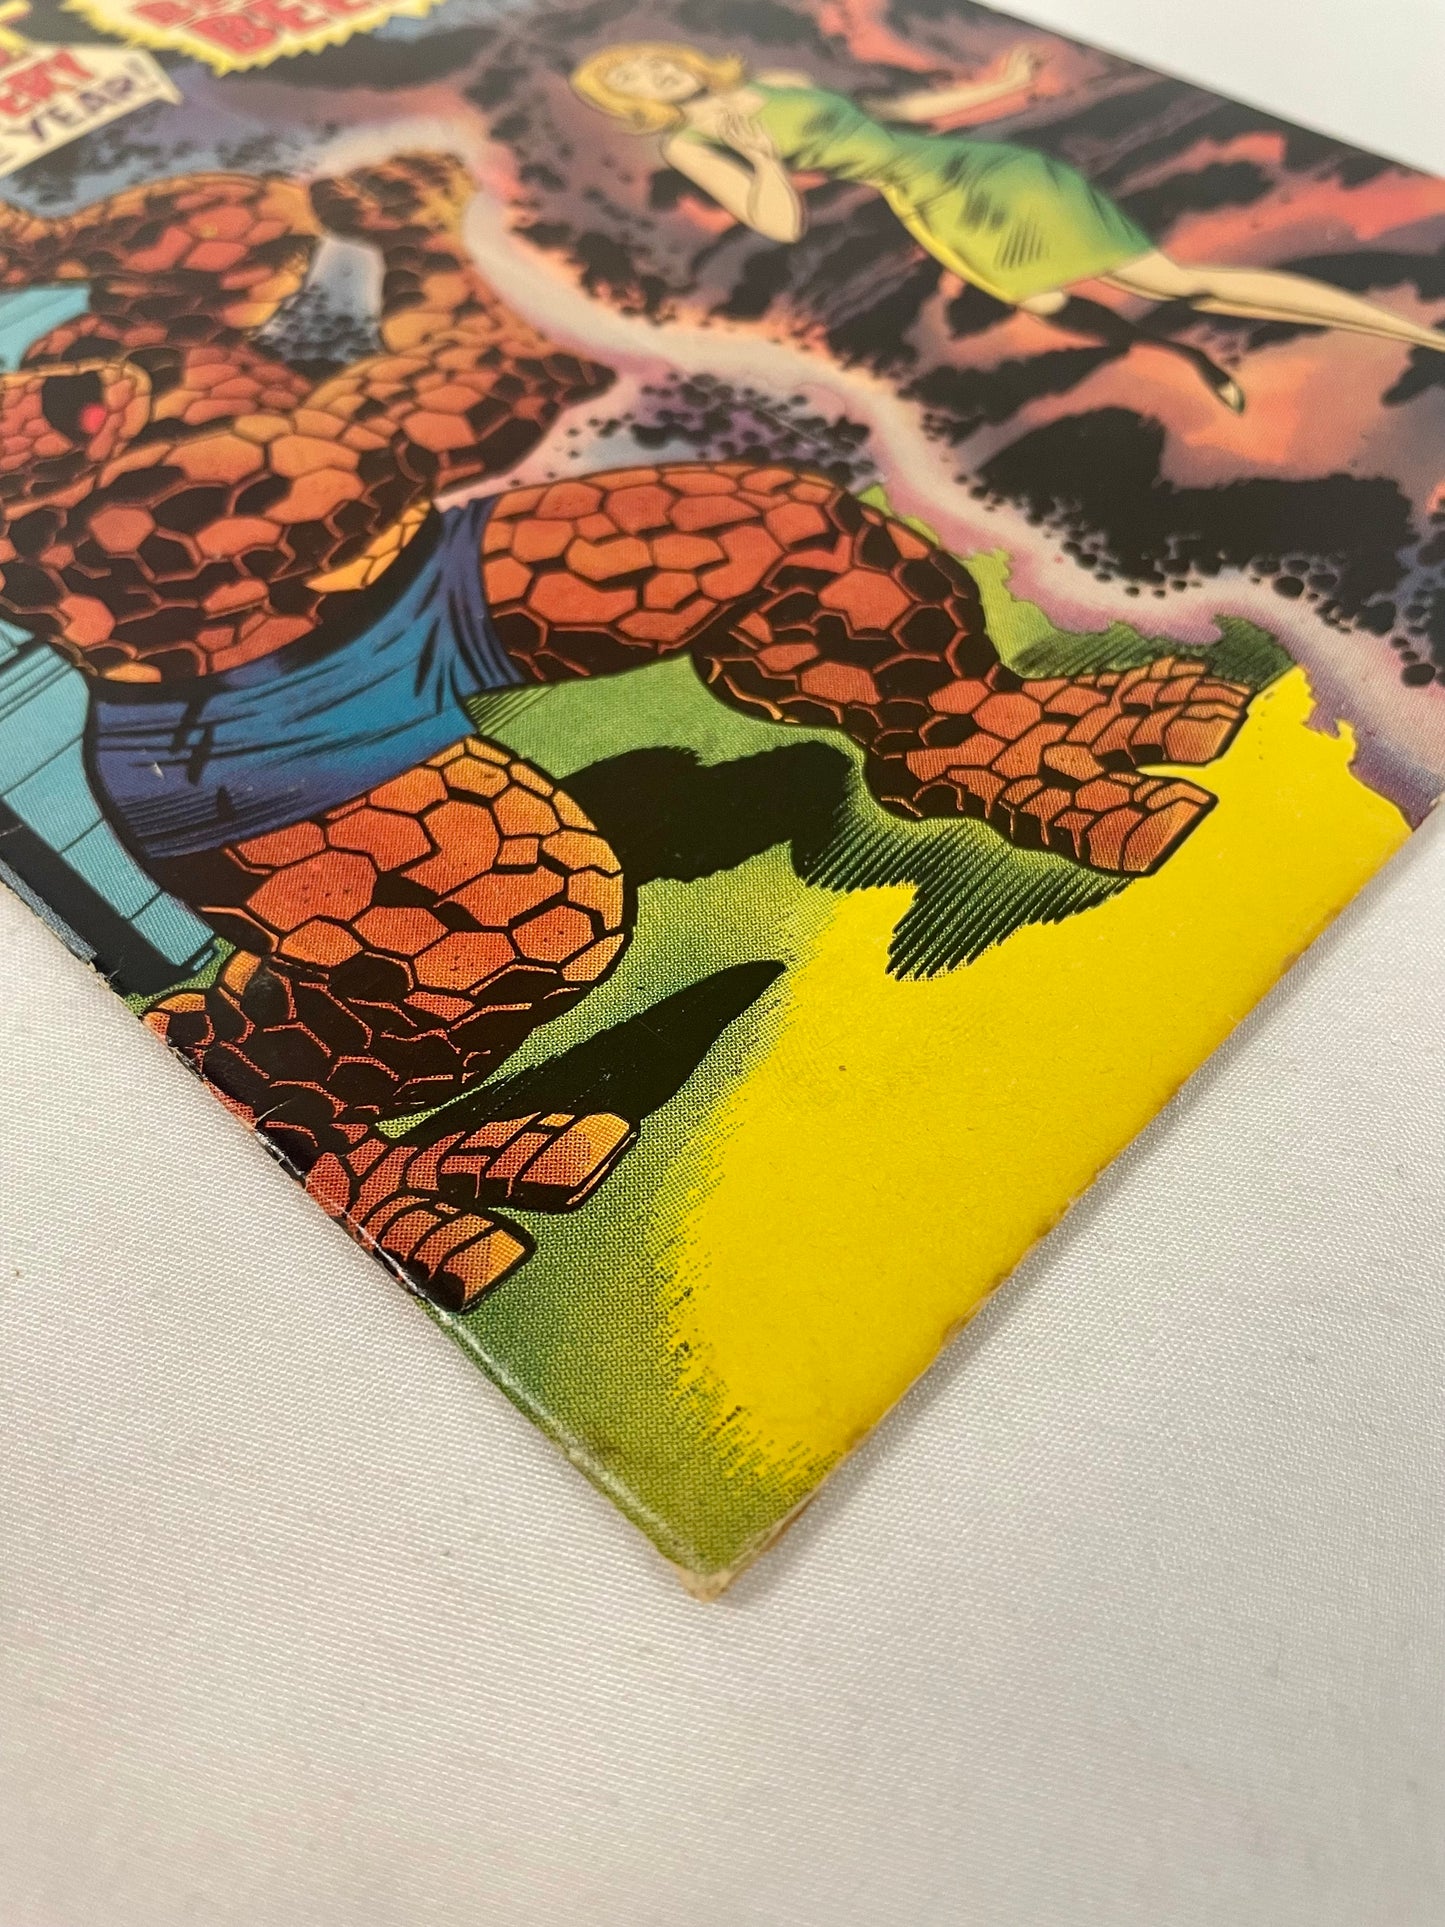 Marvel Comics Fantastic Four #66